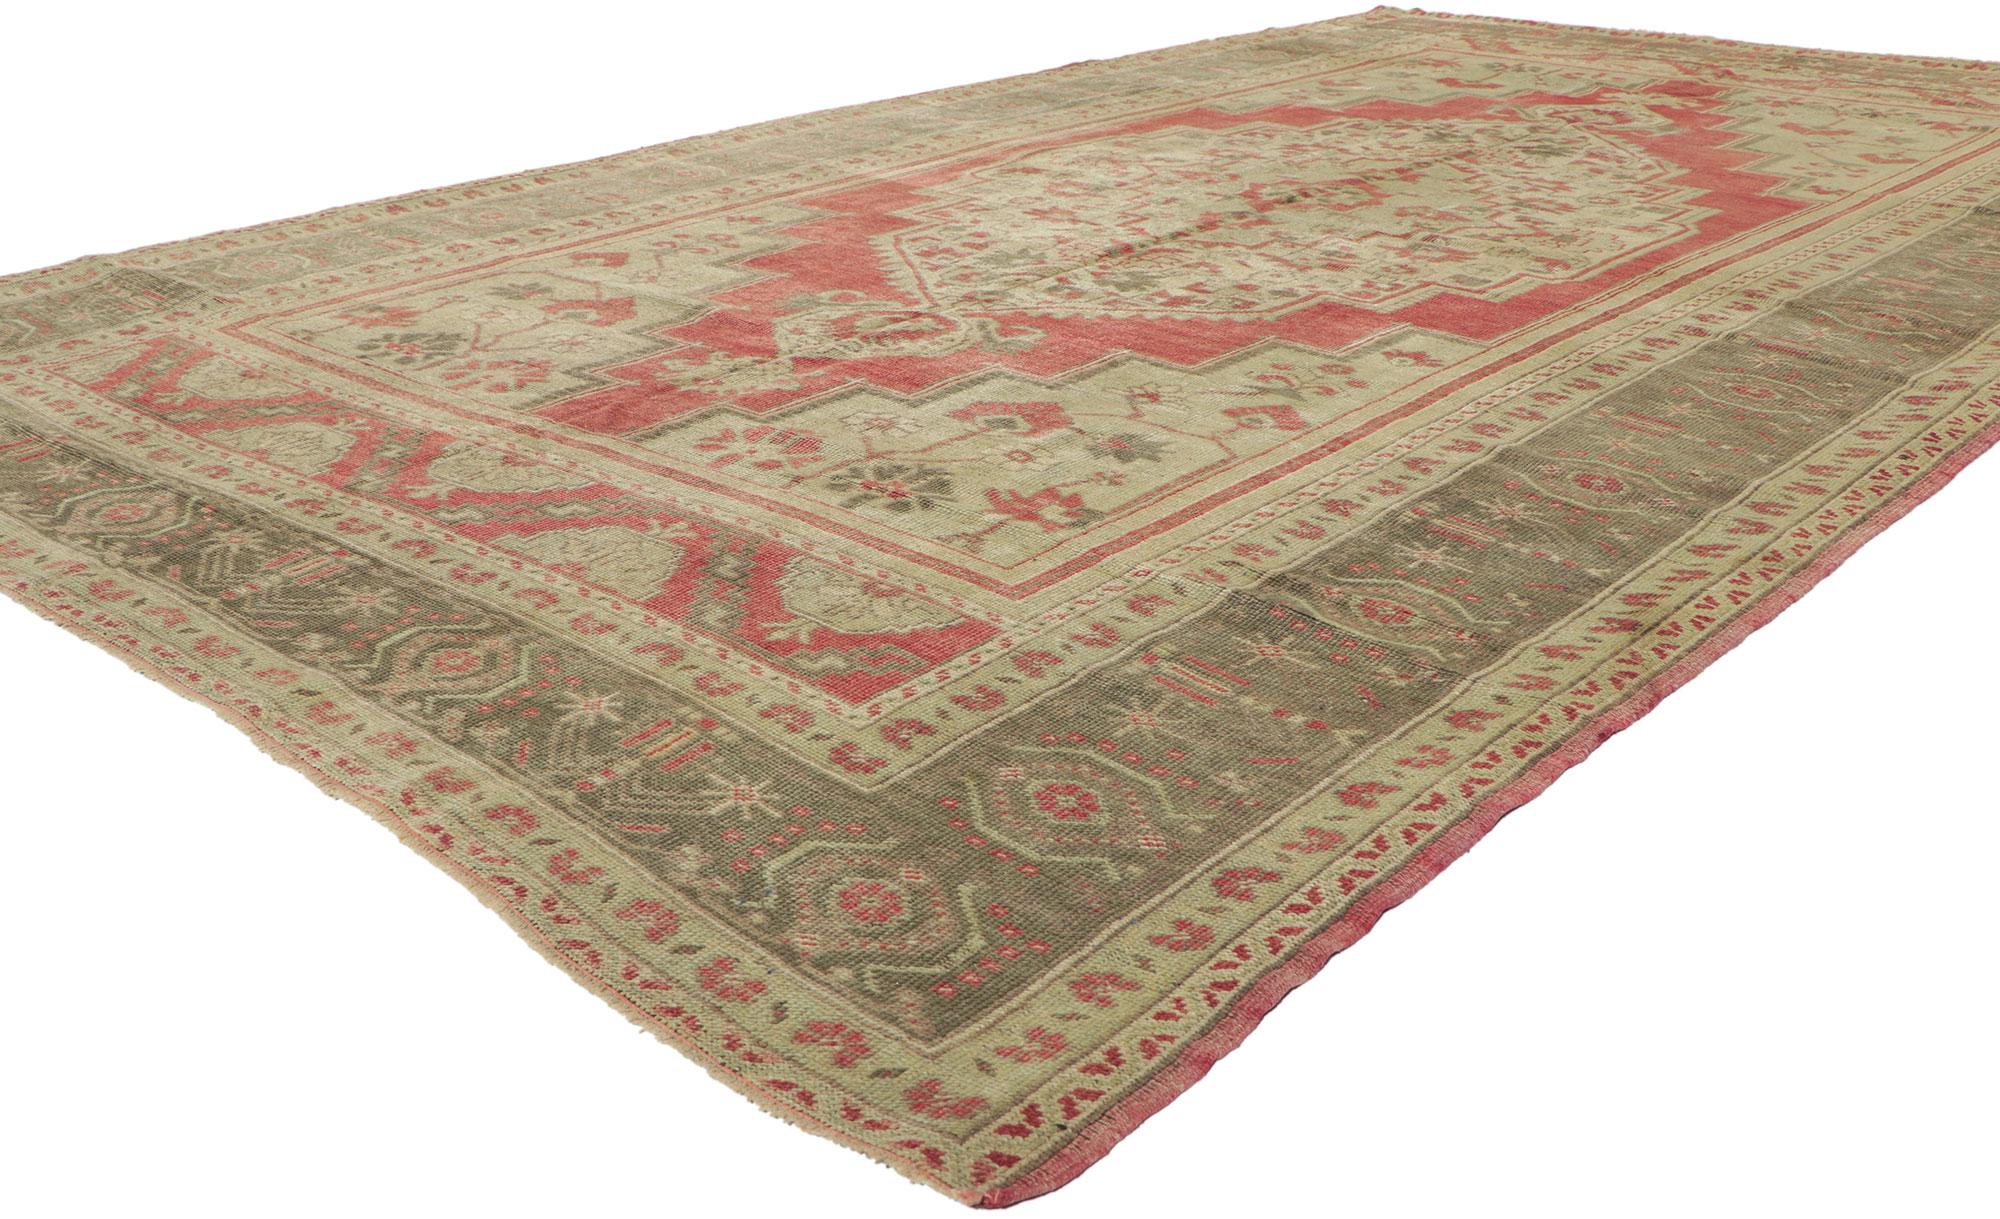 51367 tapis vintage turc Oushak de style Tudor. Ce tapis turc Oushak vintage en laine nouée à la main présente un médaillon hexagonal surdimensionné avec des palmettes fleuries flottant au centre d'un champ rouge brique abrasé. De superbes vignes